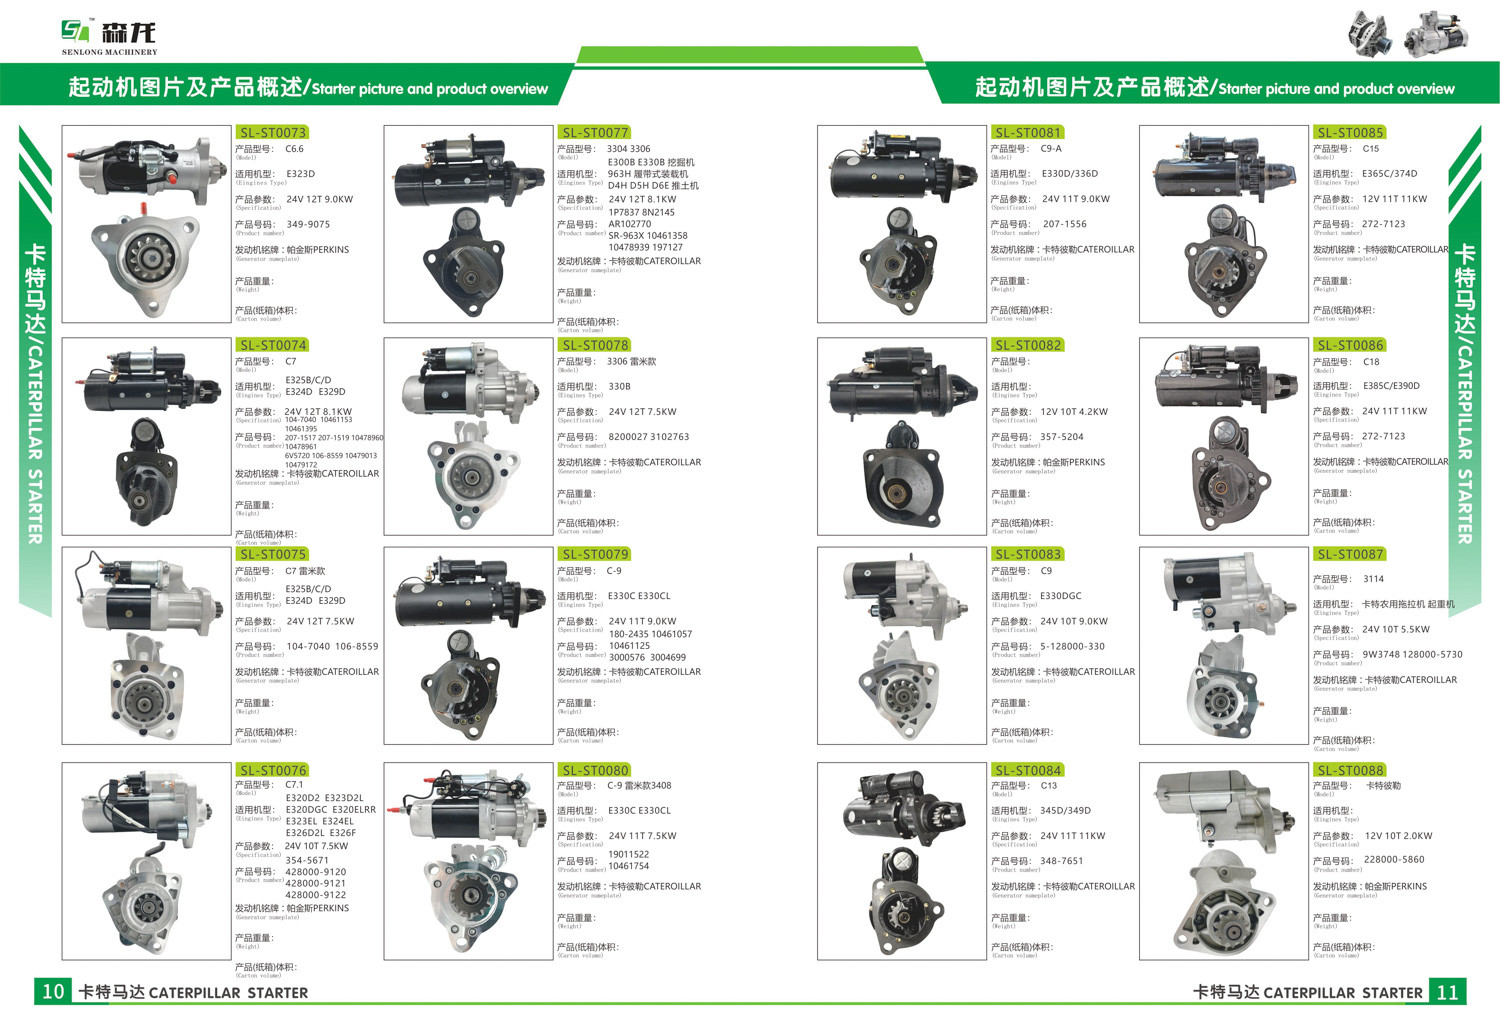 12V 9T 0.9KW Starter motor Kubota 2280001870,MD184420